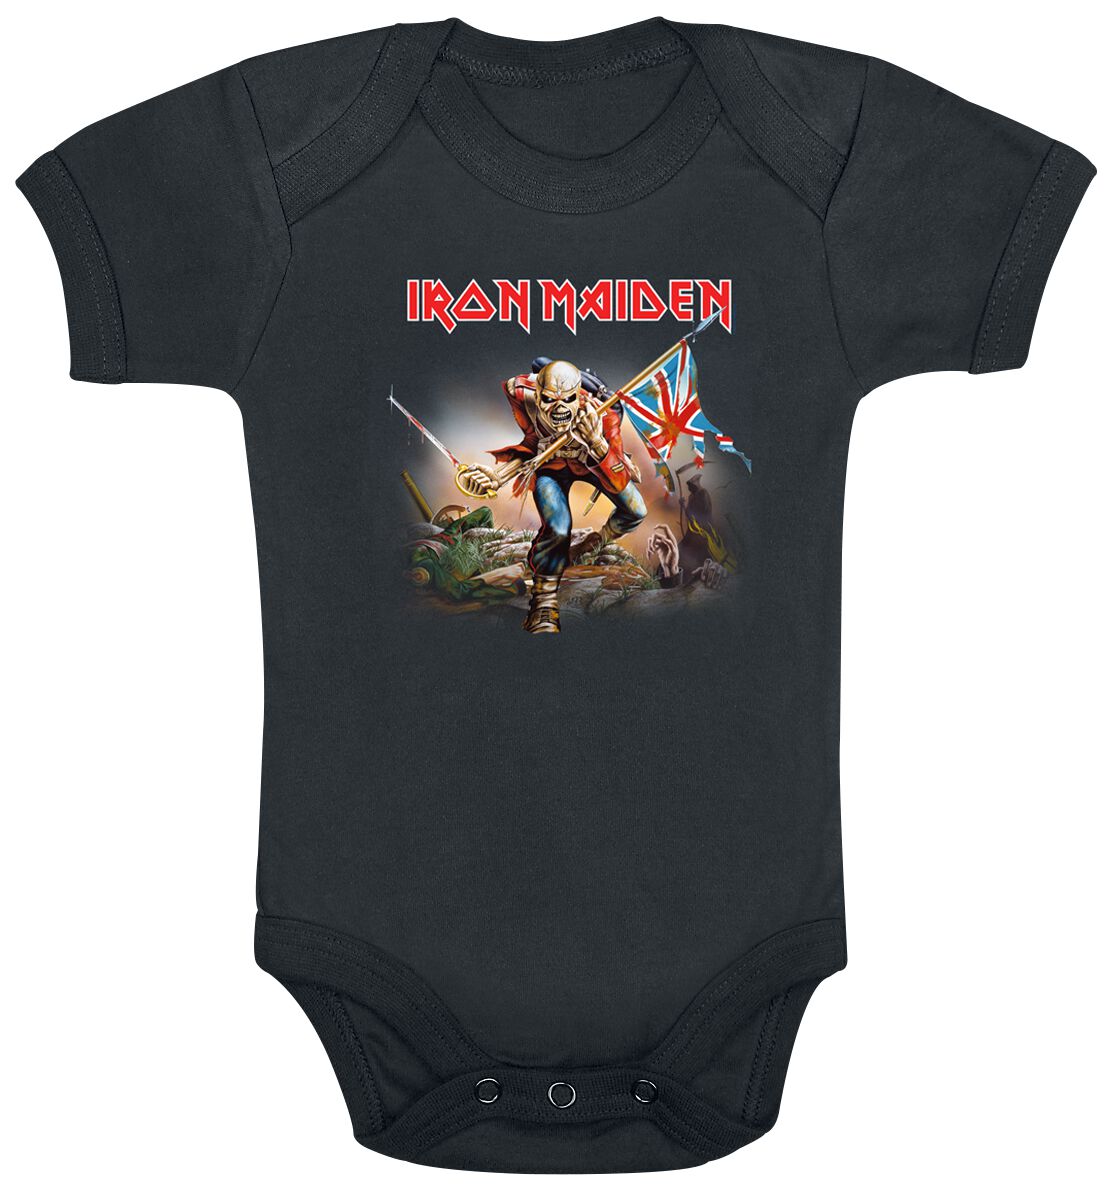 Iron Maiden Body für Kleinkinder - Kids - Trooper - für Mädchen & Jungen - schwarz  - Lizenziertes Merchandise!